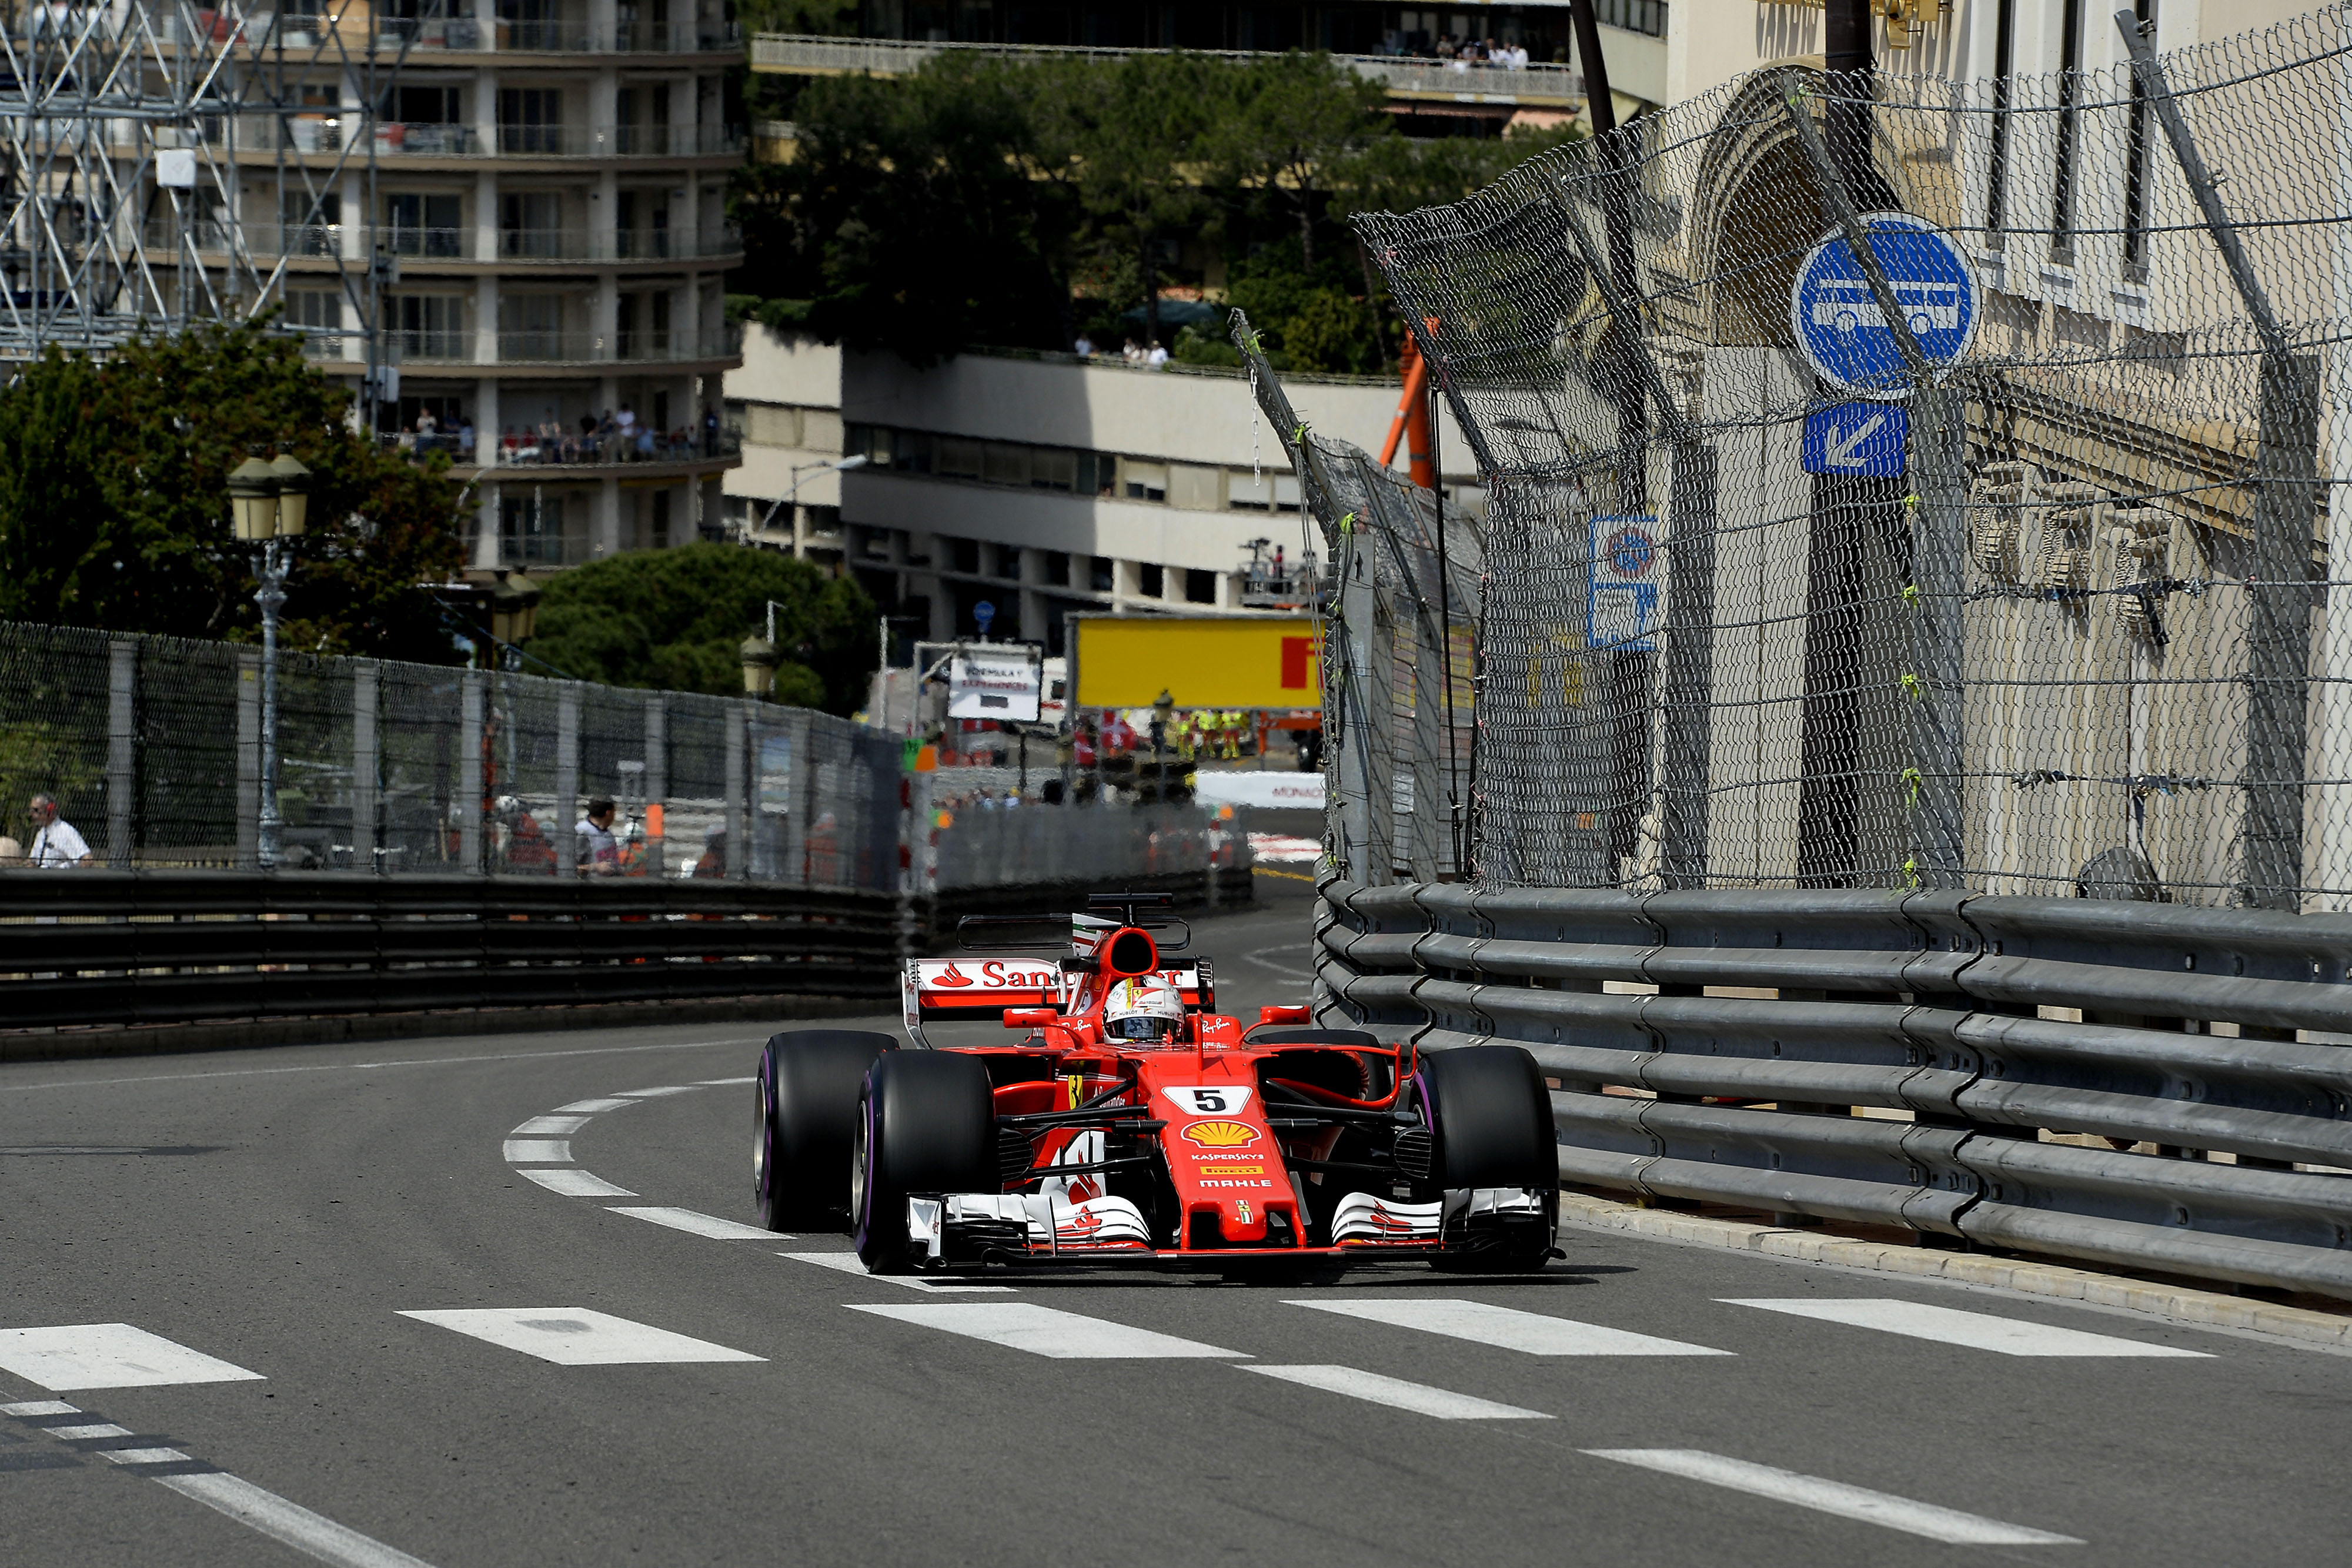 F1 2017 Monaco Gp Review Ferrari Score 12 Victory on Monte Carlo